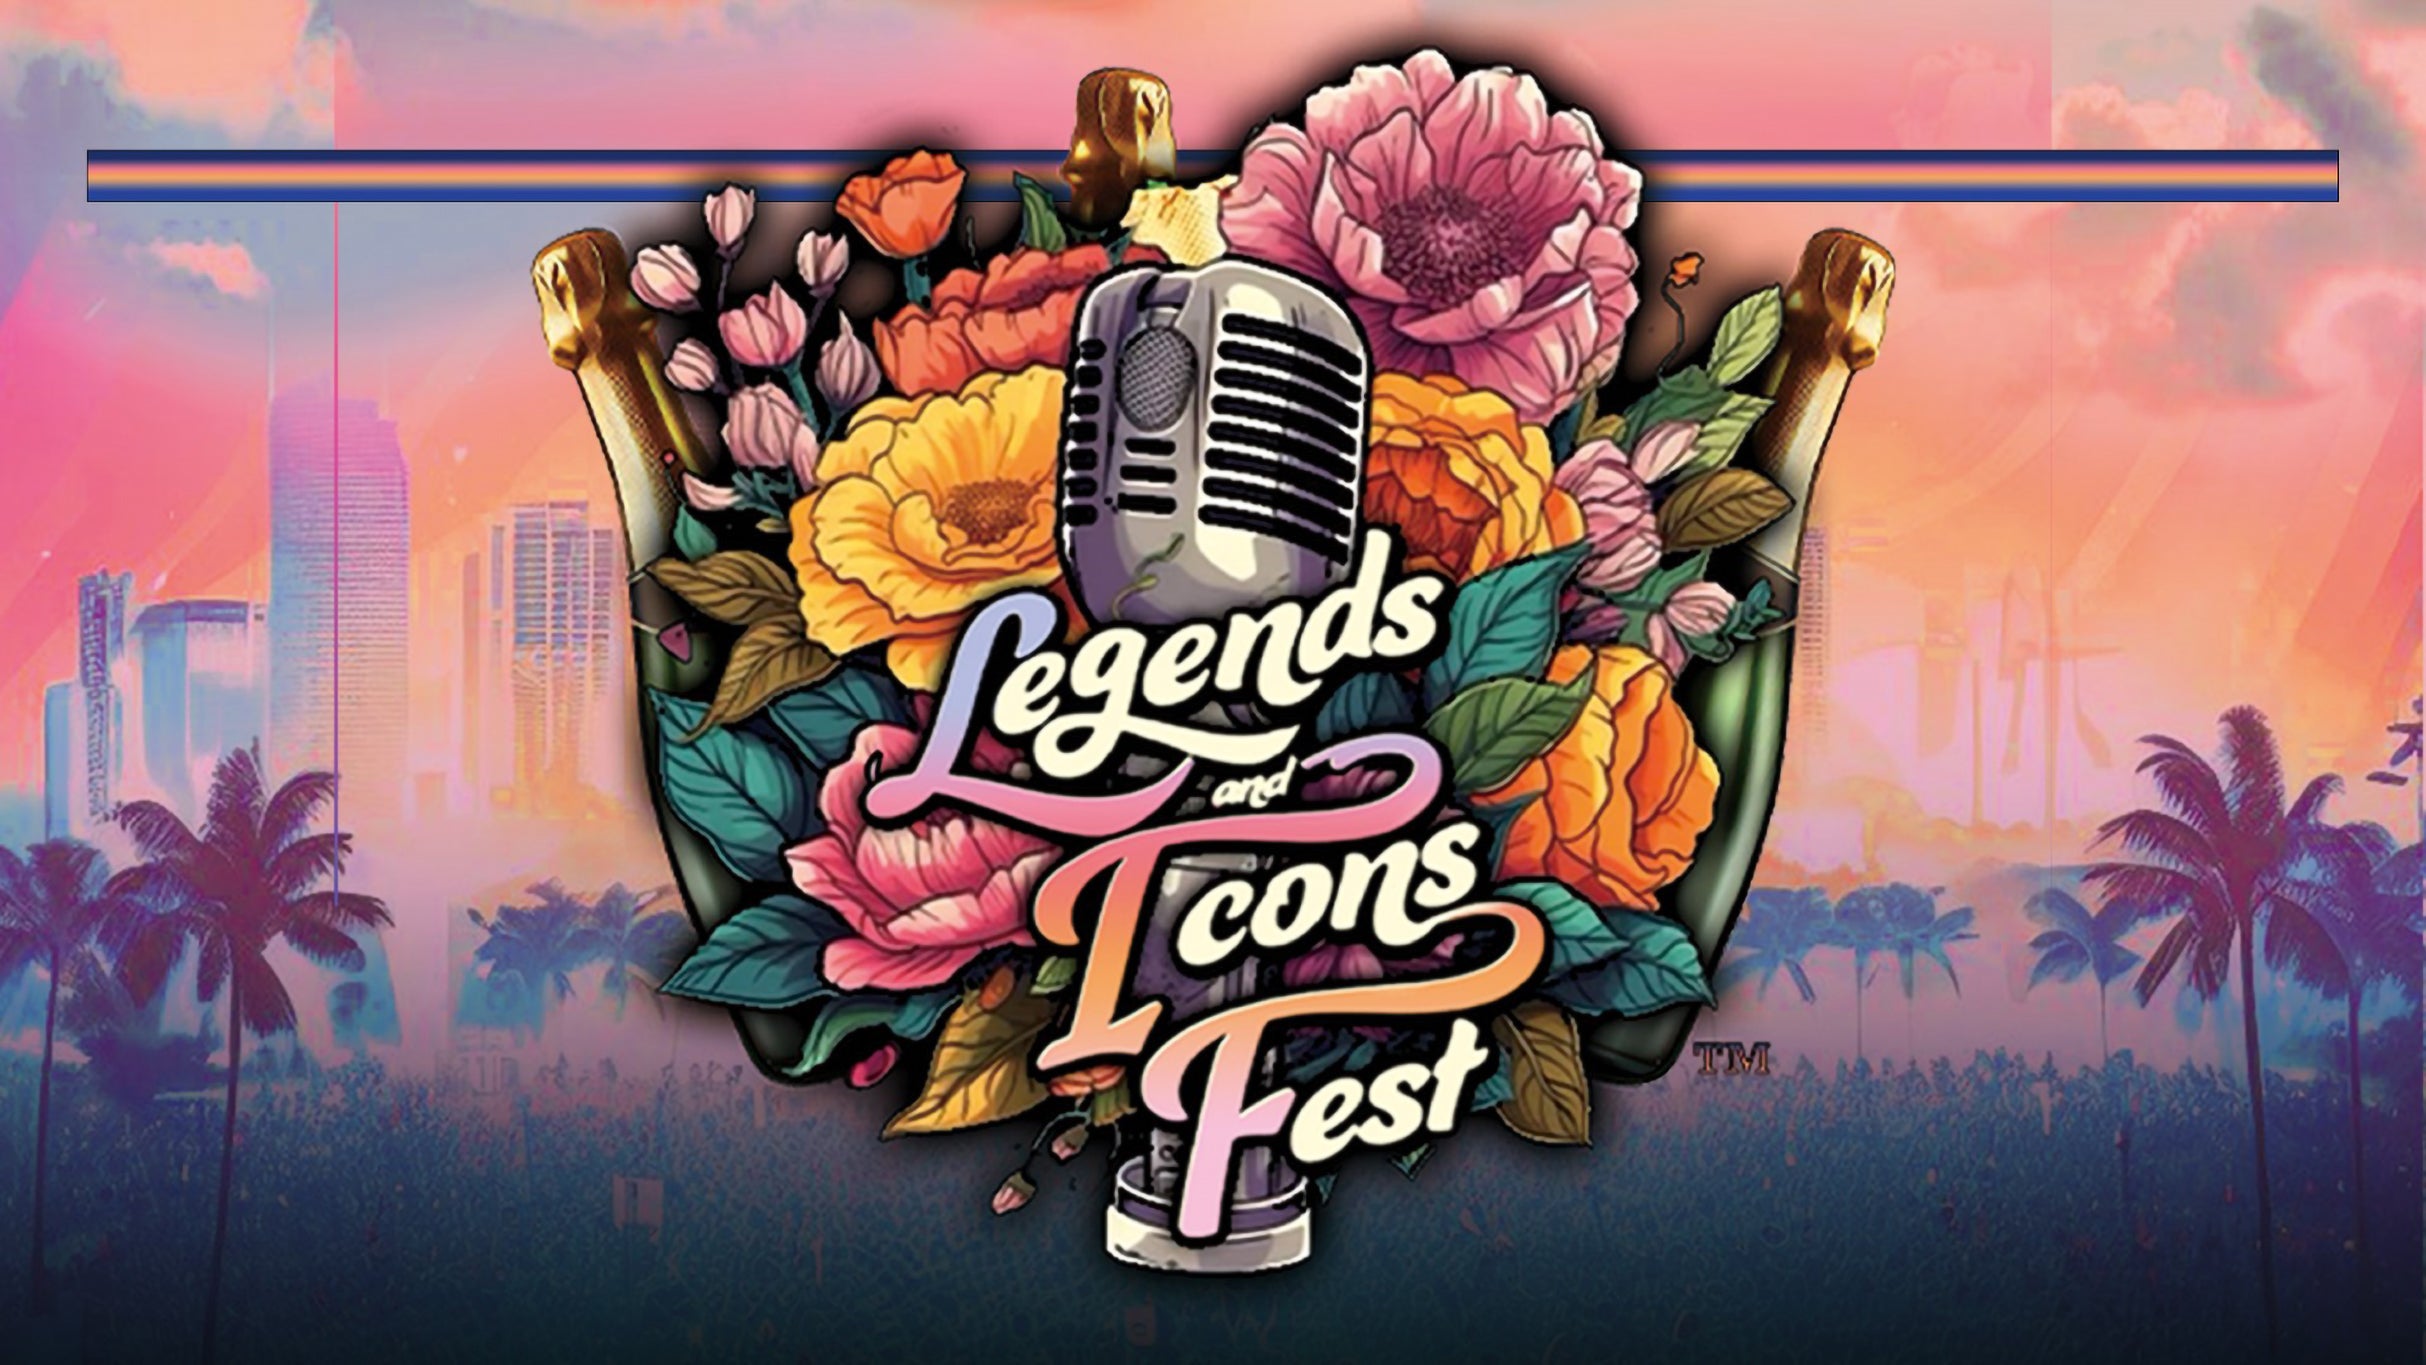 Legends and Icons Fest presale information on freepresalepasswords.com